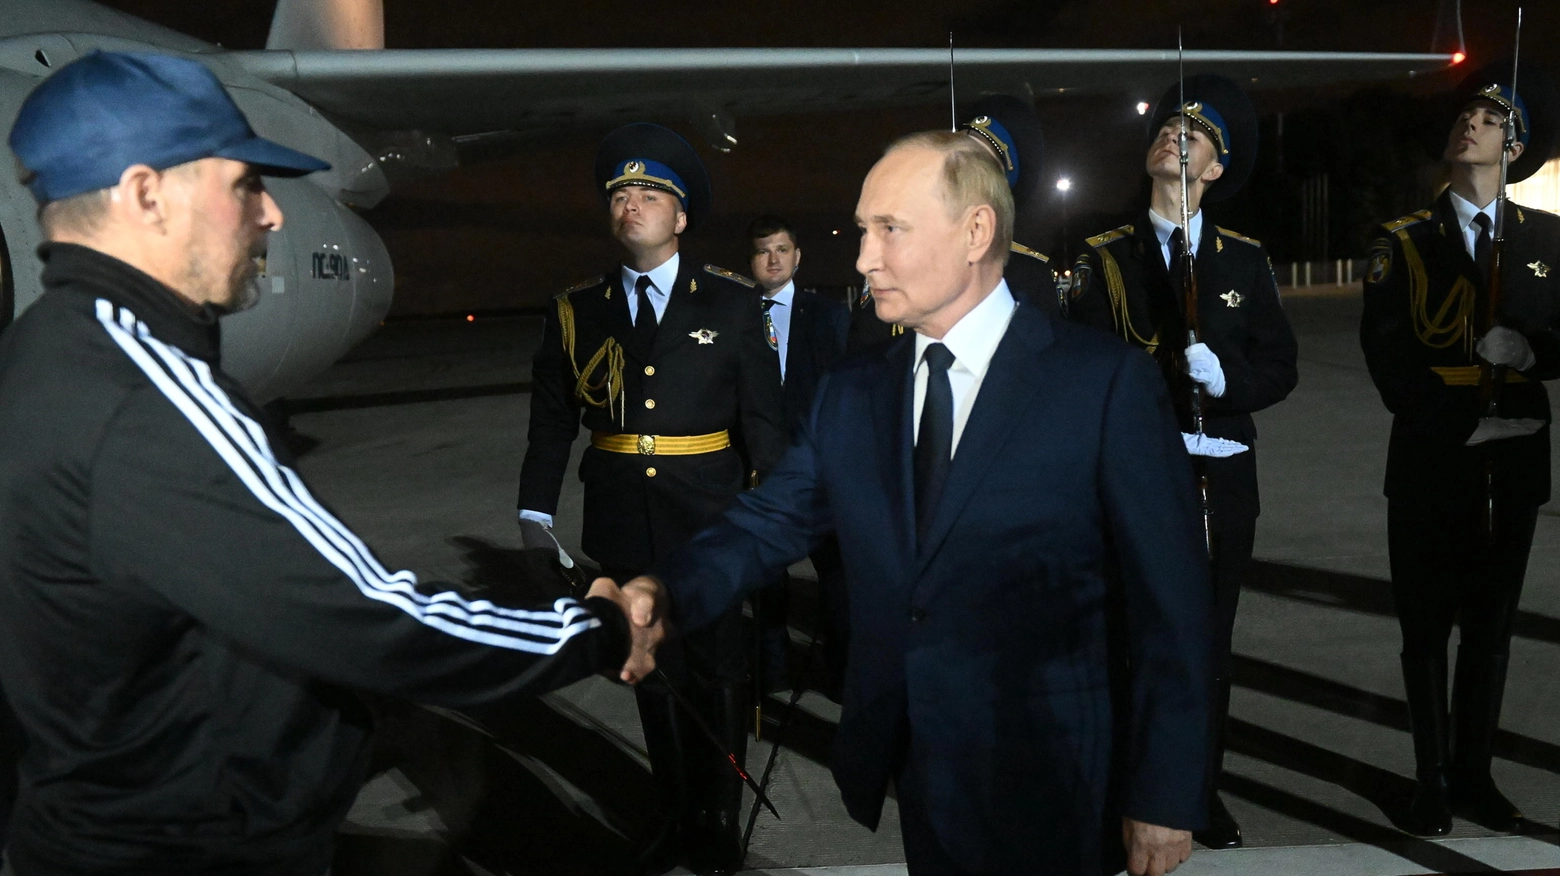 L'arrivo di Vadim Krasikov (sinistra), accolto dal presidente russo Vladimir Putin, all'aeroporto di Mosca dopo la sua liberazione dalle carceri tedesche (Ansa)